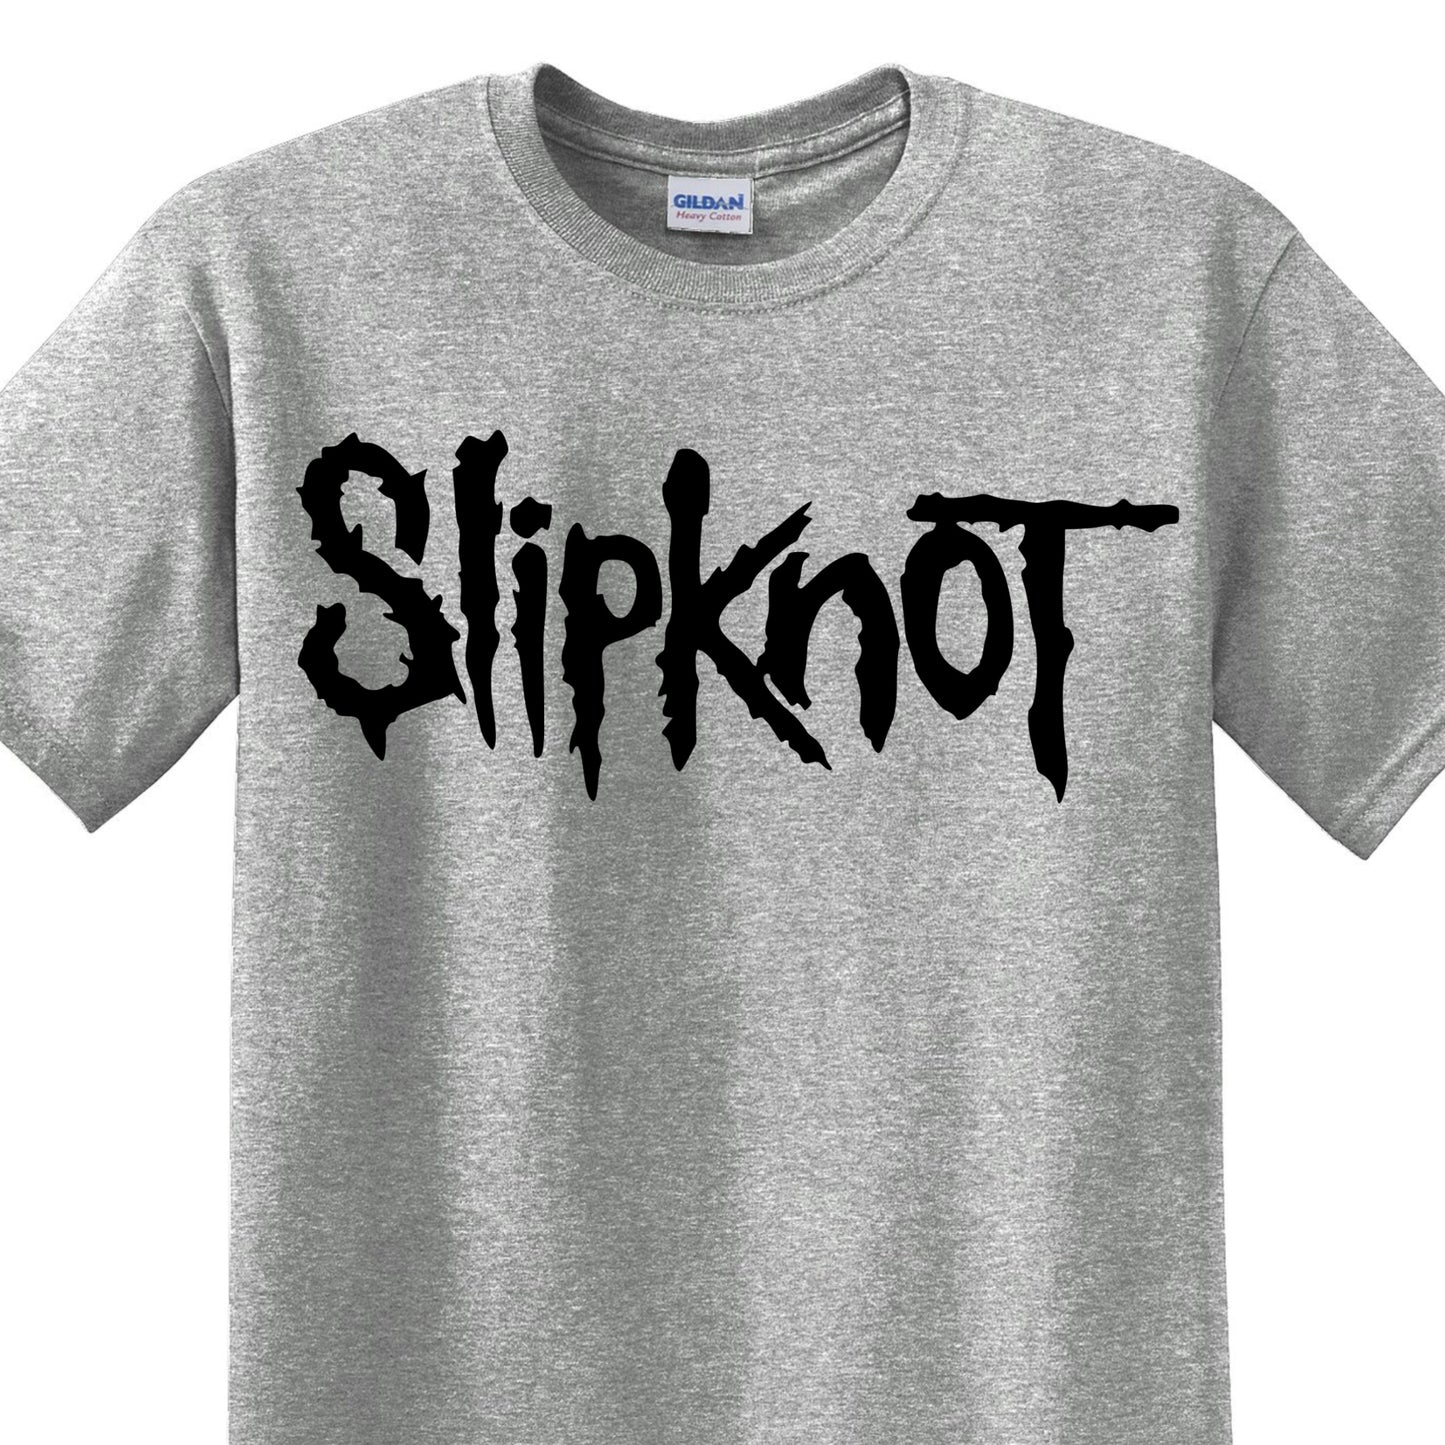 Radical Band  Men's Shirts - Slipknot (Gray) - MYSTYLEMYCLOTHING